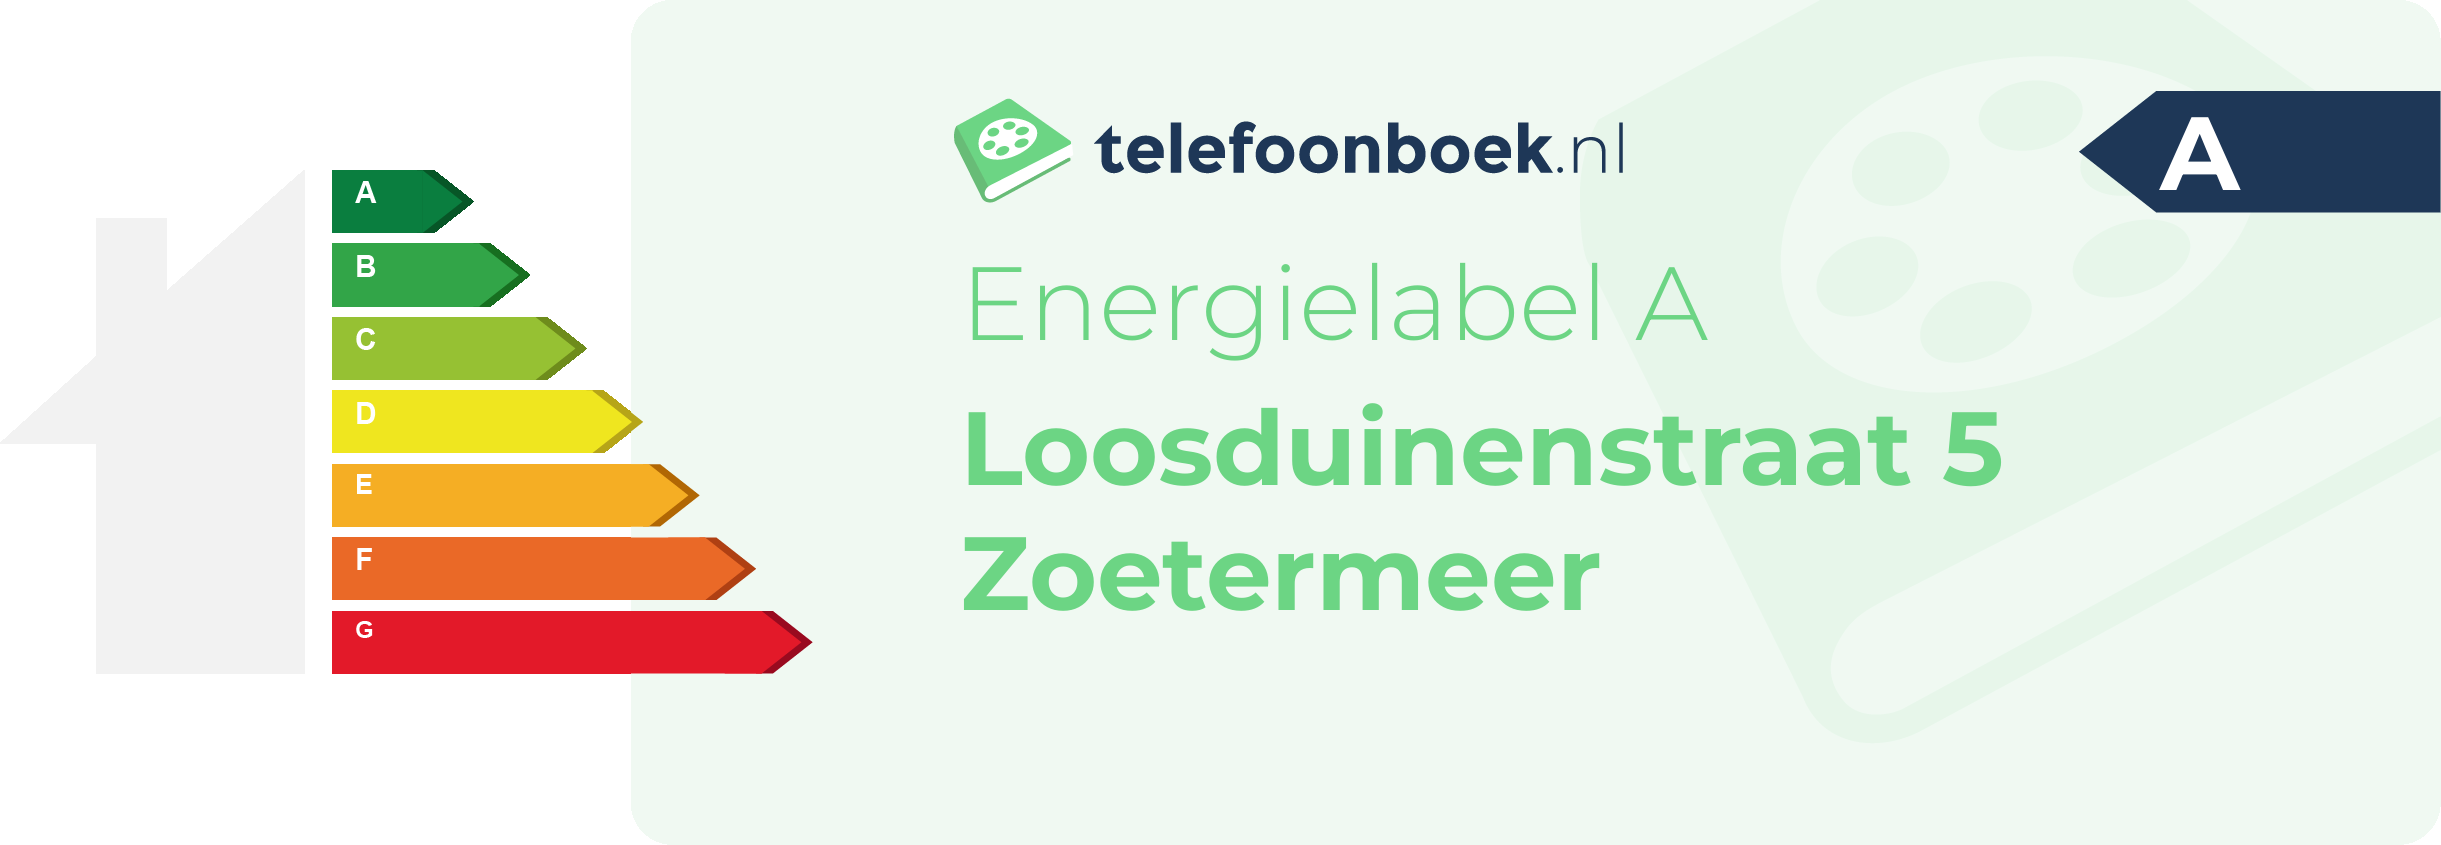 Energielabel Loosduinenstraat 5 Zoetermeer